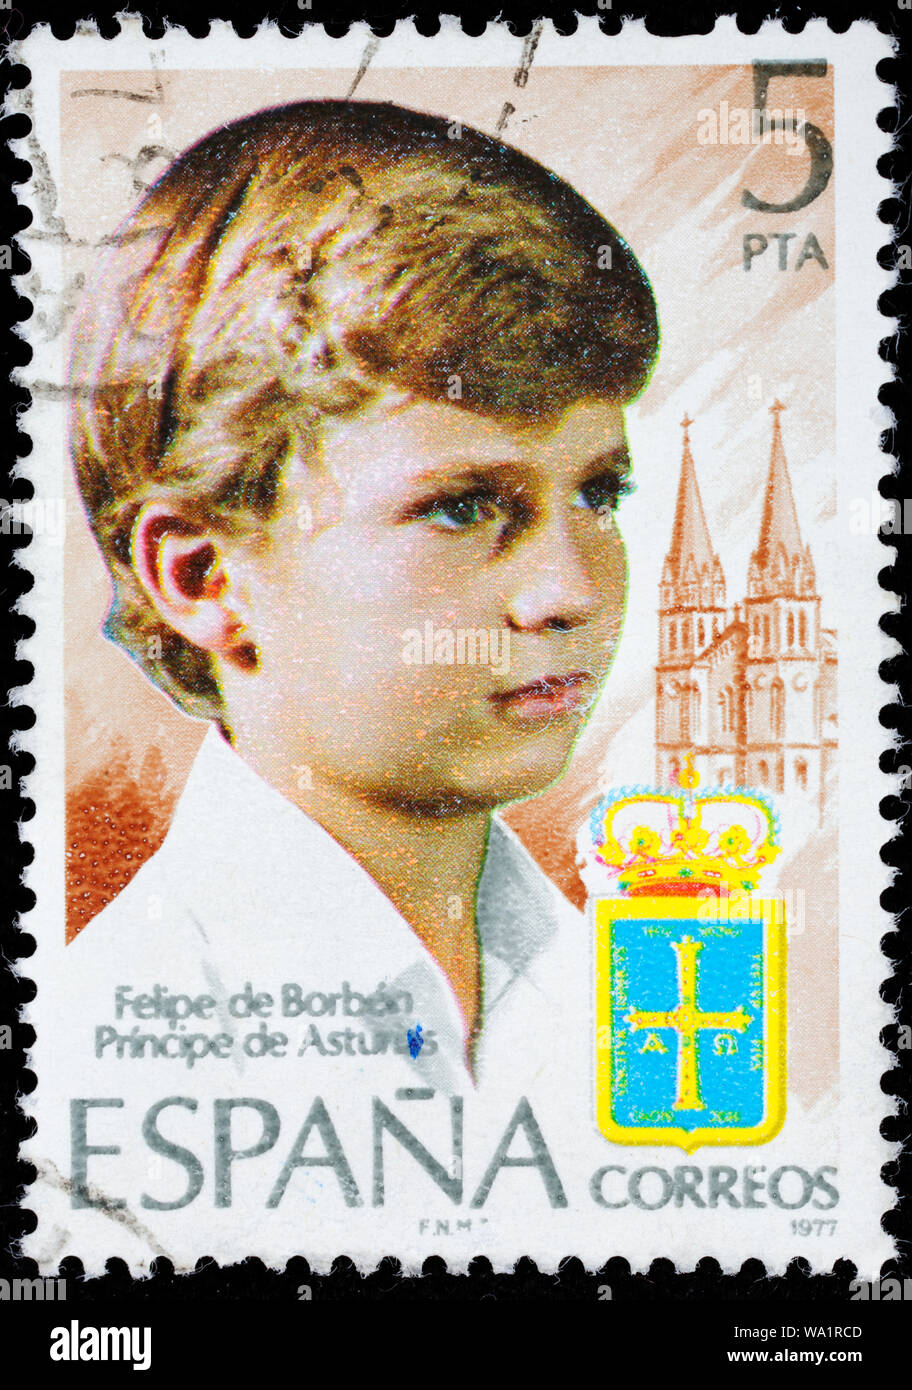 Philip VI, Felipe VI, Prince of Asturias, postage stamp, Spain, 1977 Stock Photo